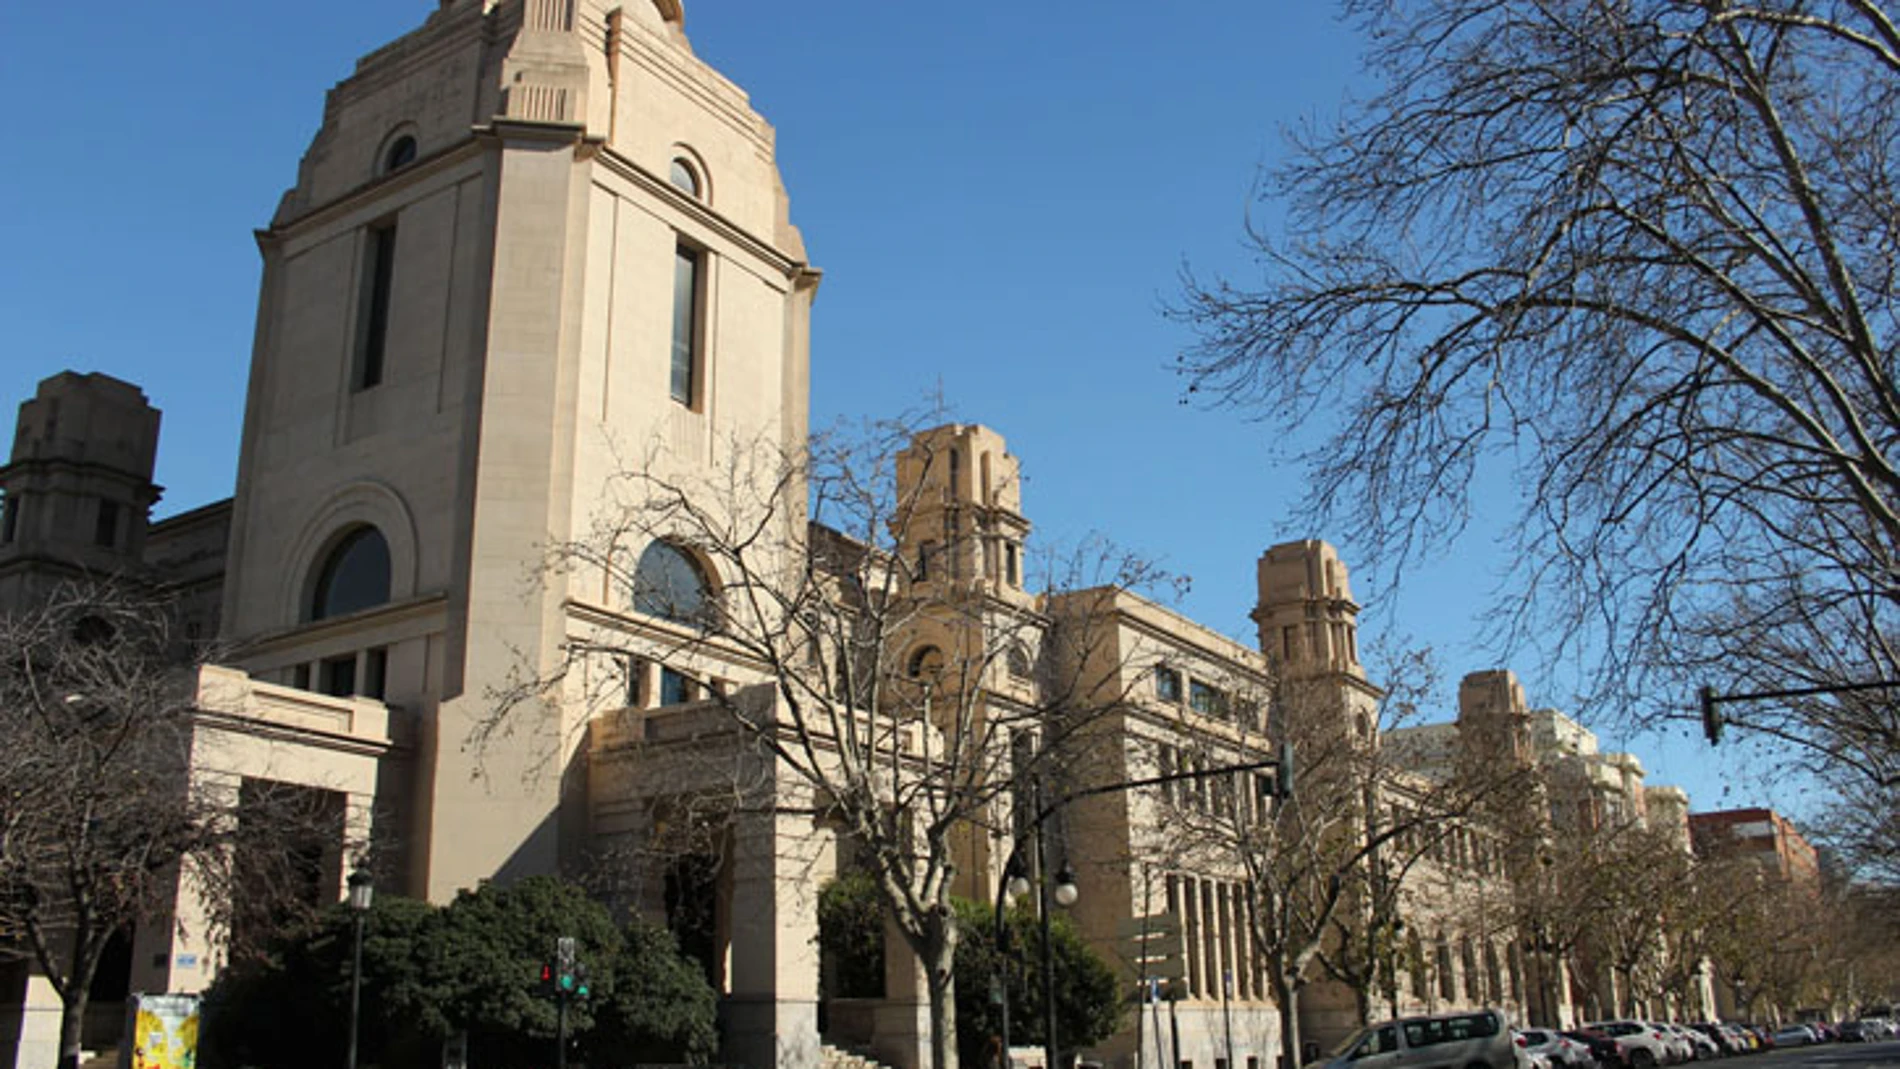 Imagen del edificio del rectorado de la Universitat de València